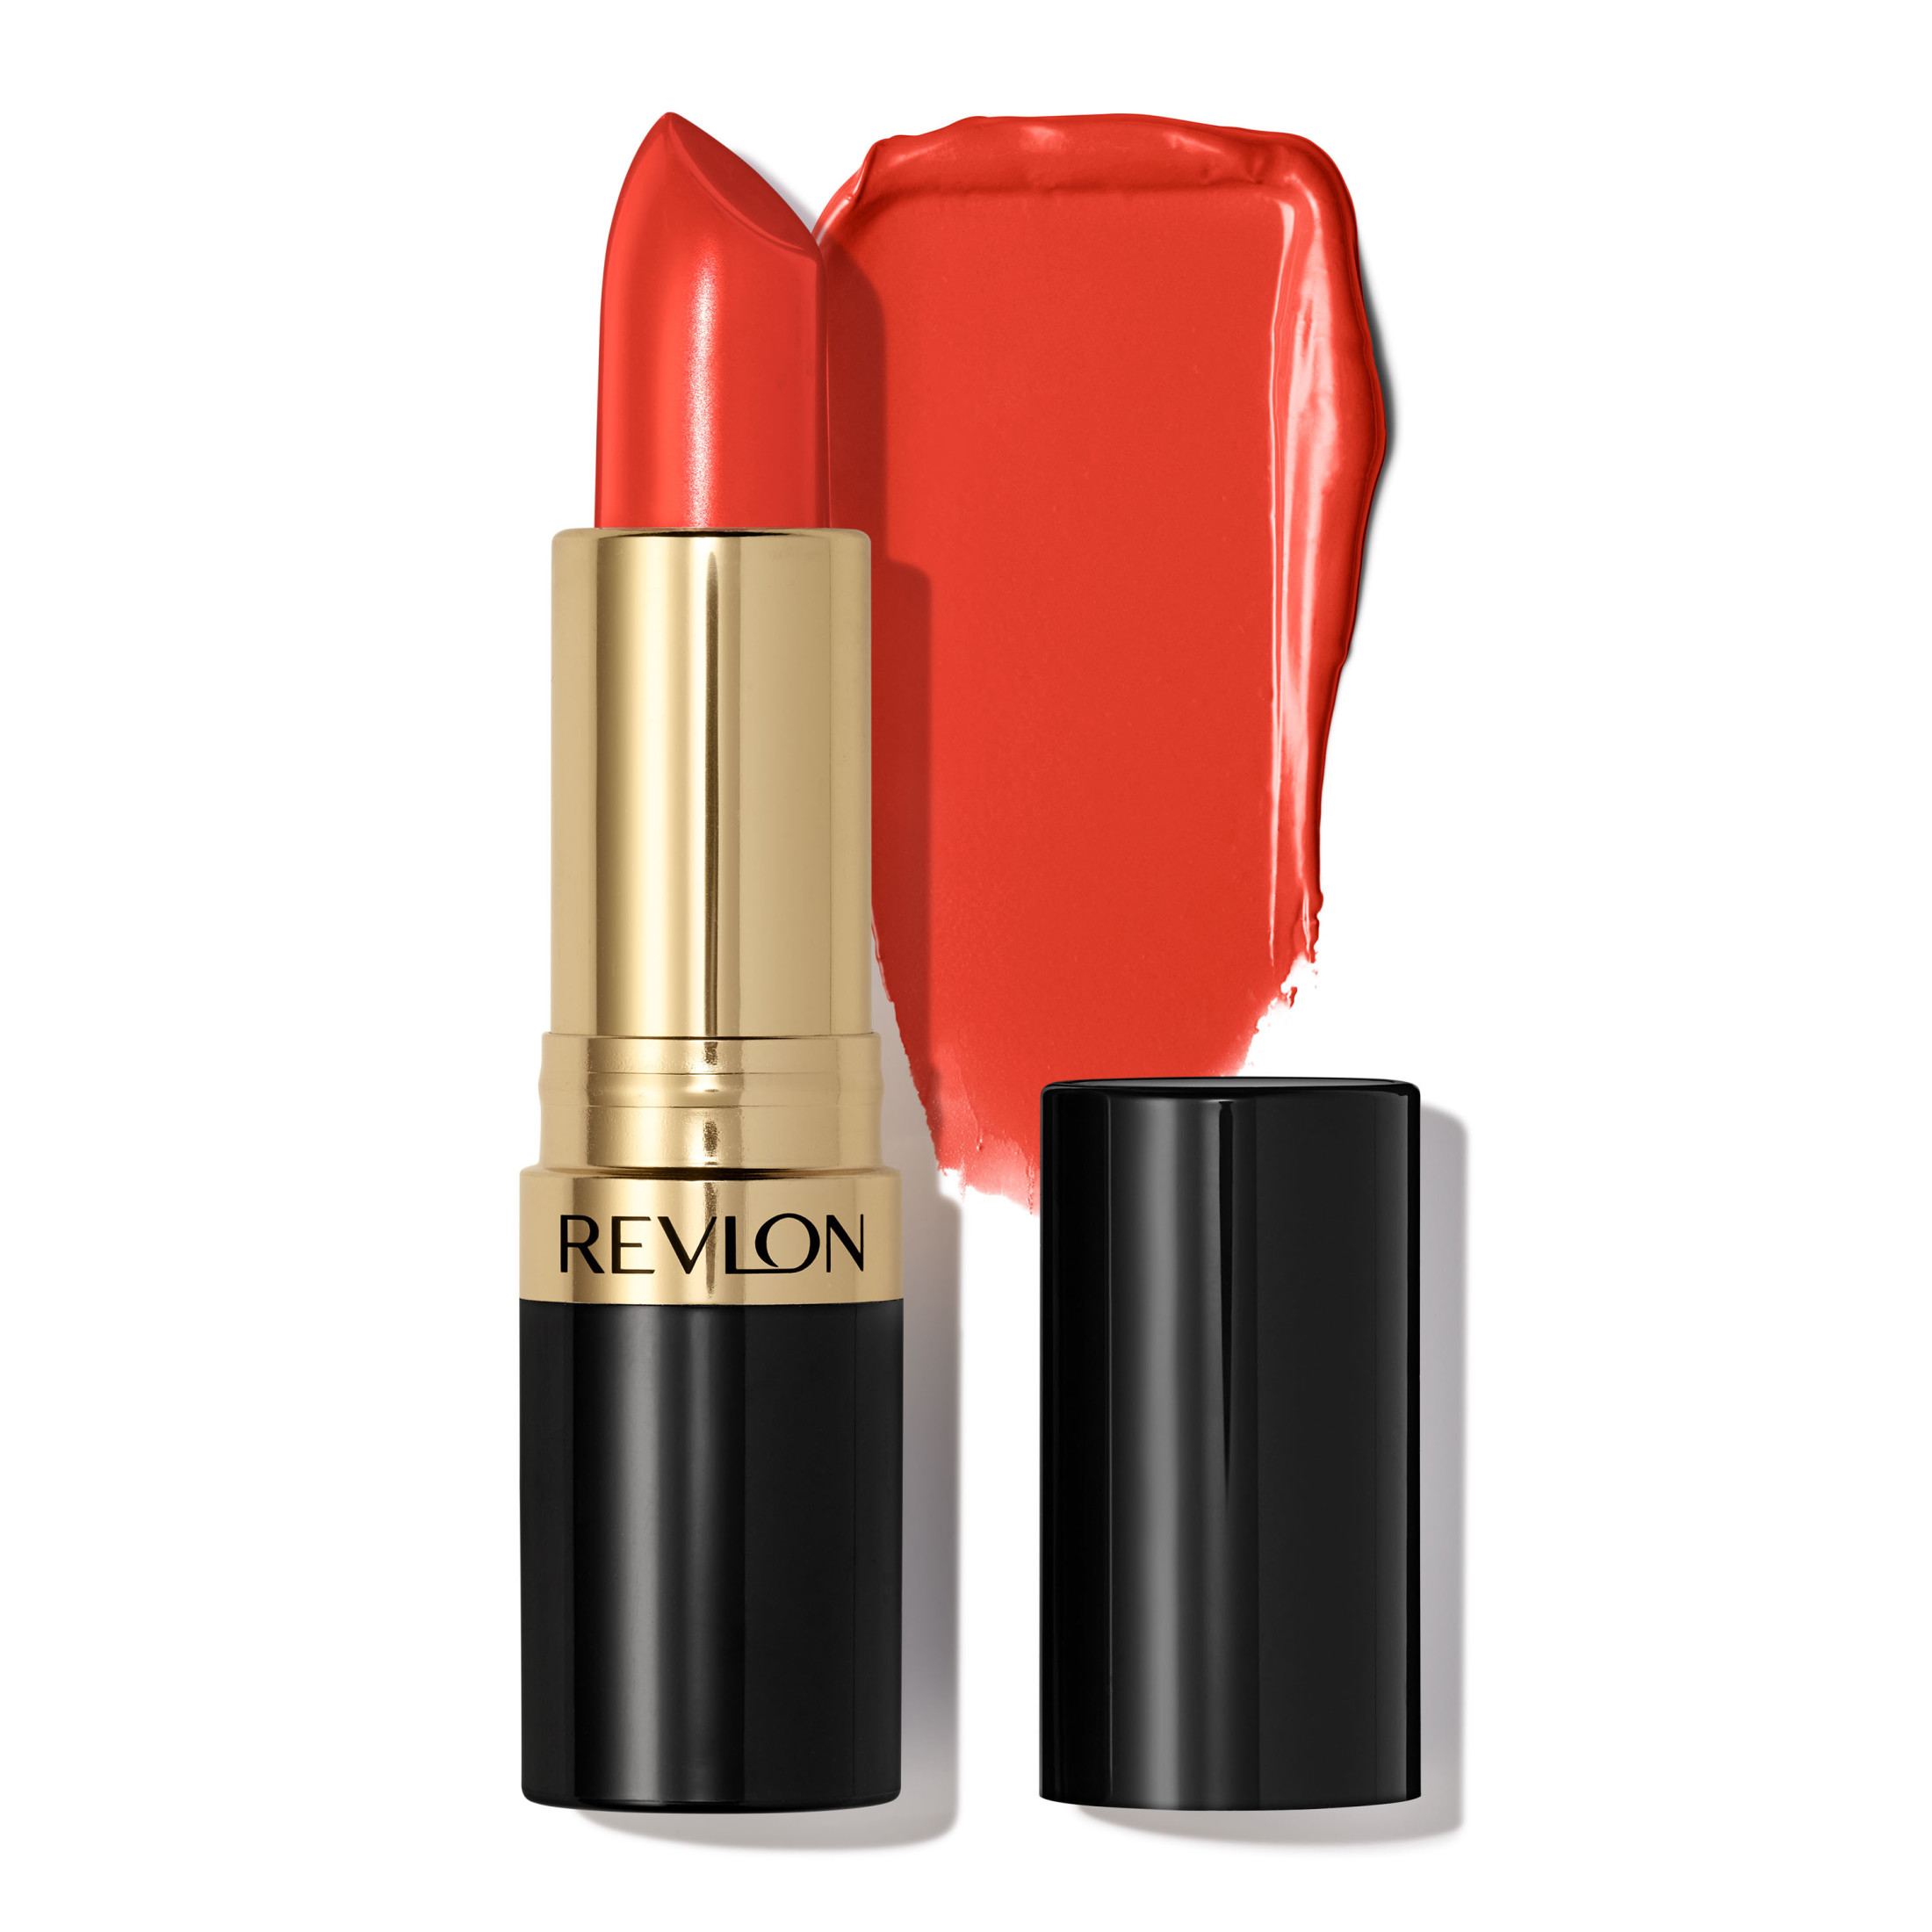 Revlon Super Lustrous Creme Lipstick, Creamy Formula, 750 Kiss Me Coral, 0.15 oz - image 1 of 15